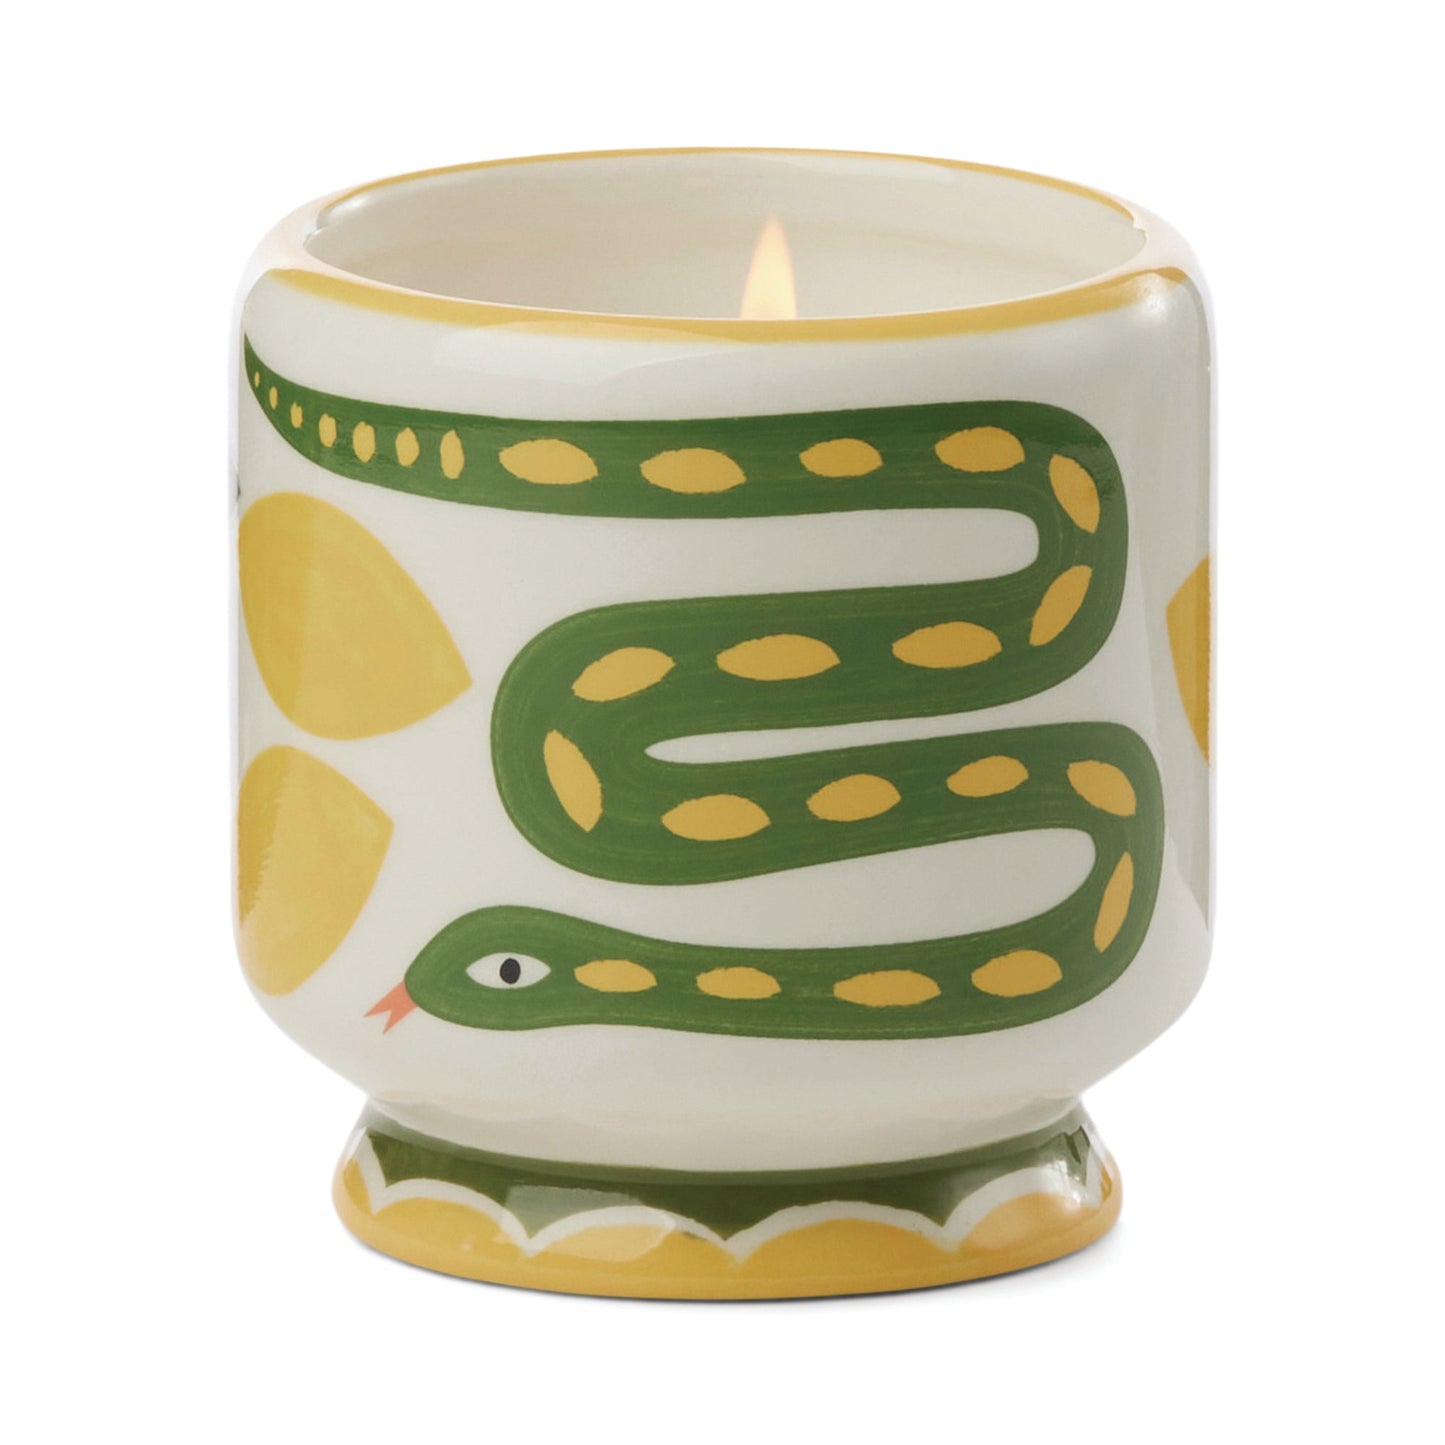 Adopo 8 oz./226g Snake Ceramic Candle - Wild Lemongrass